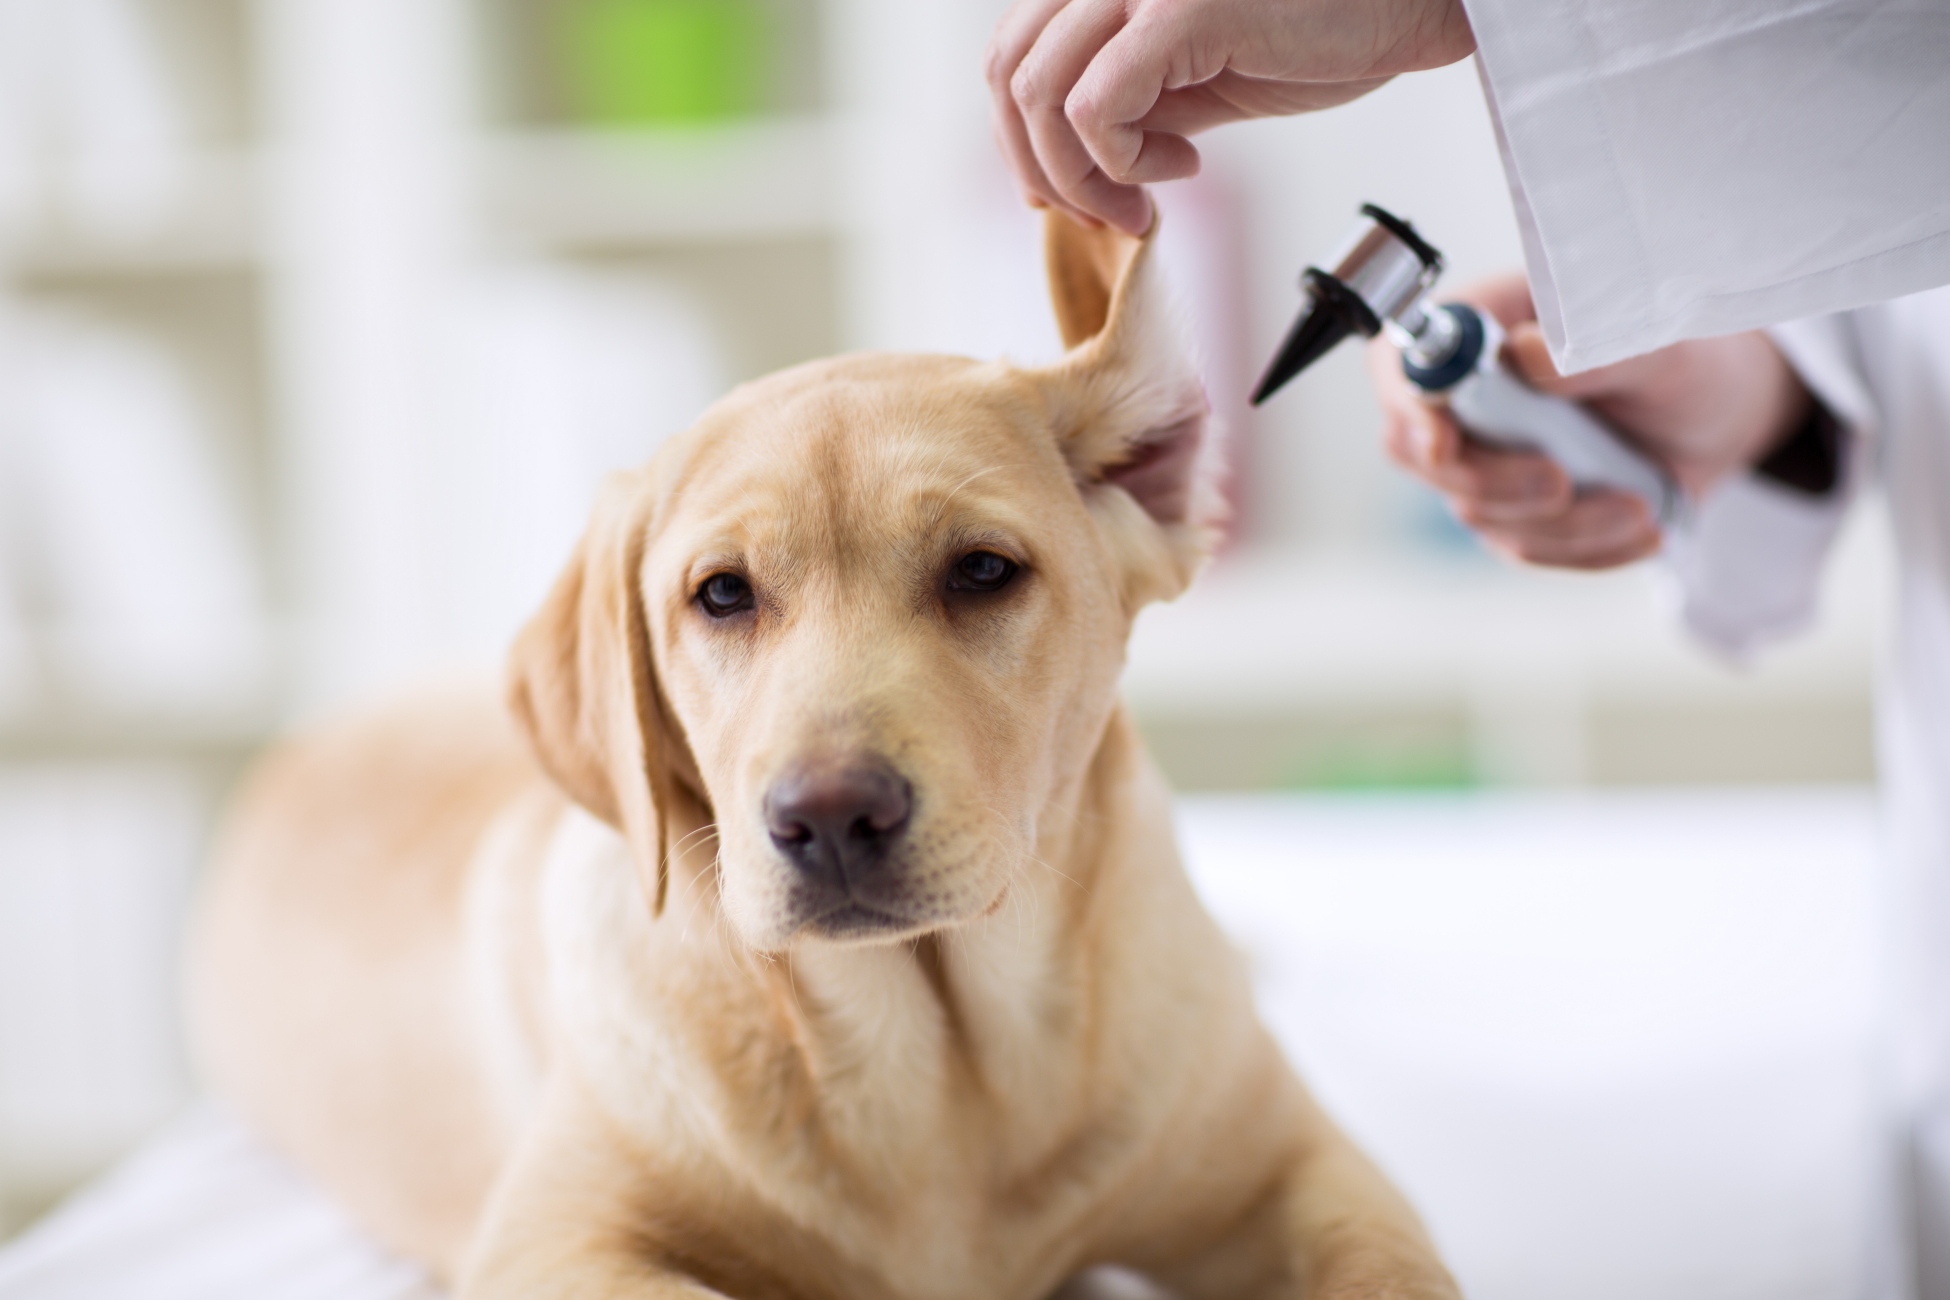 vet checking dogs ear